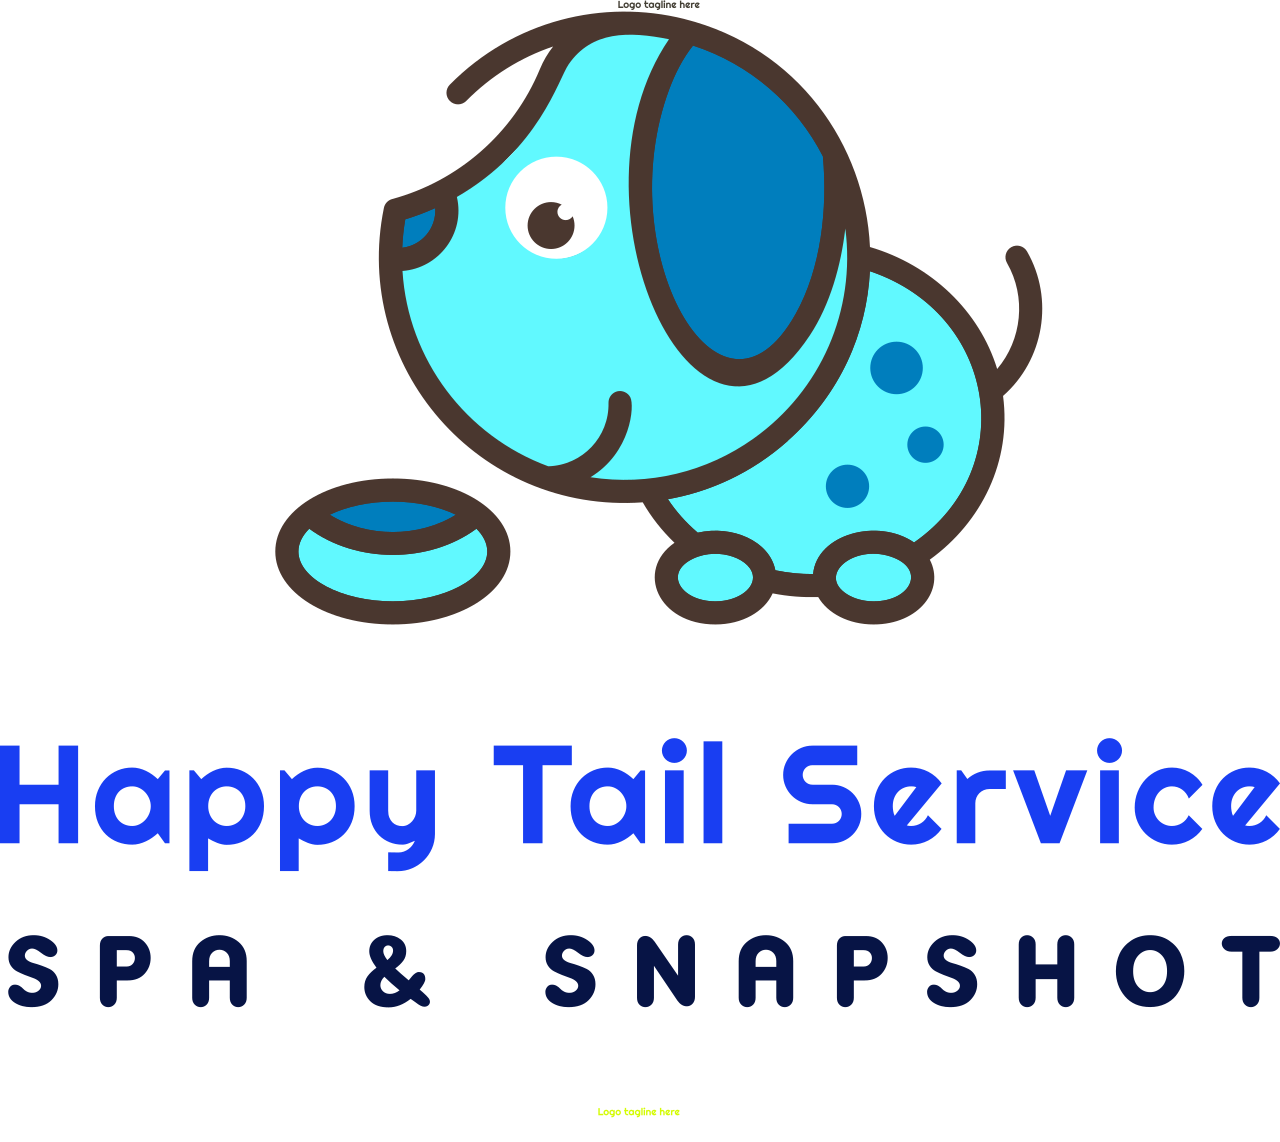 Happy Tail Service 's logo